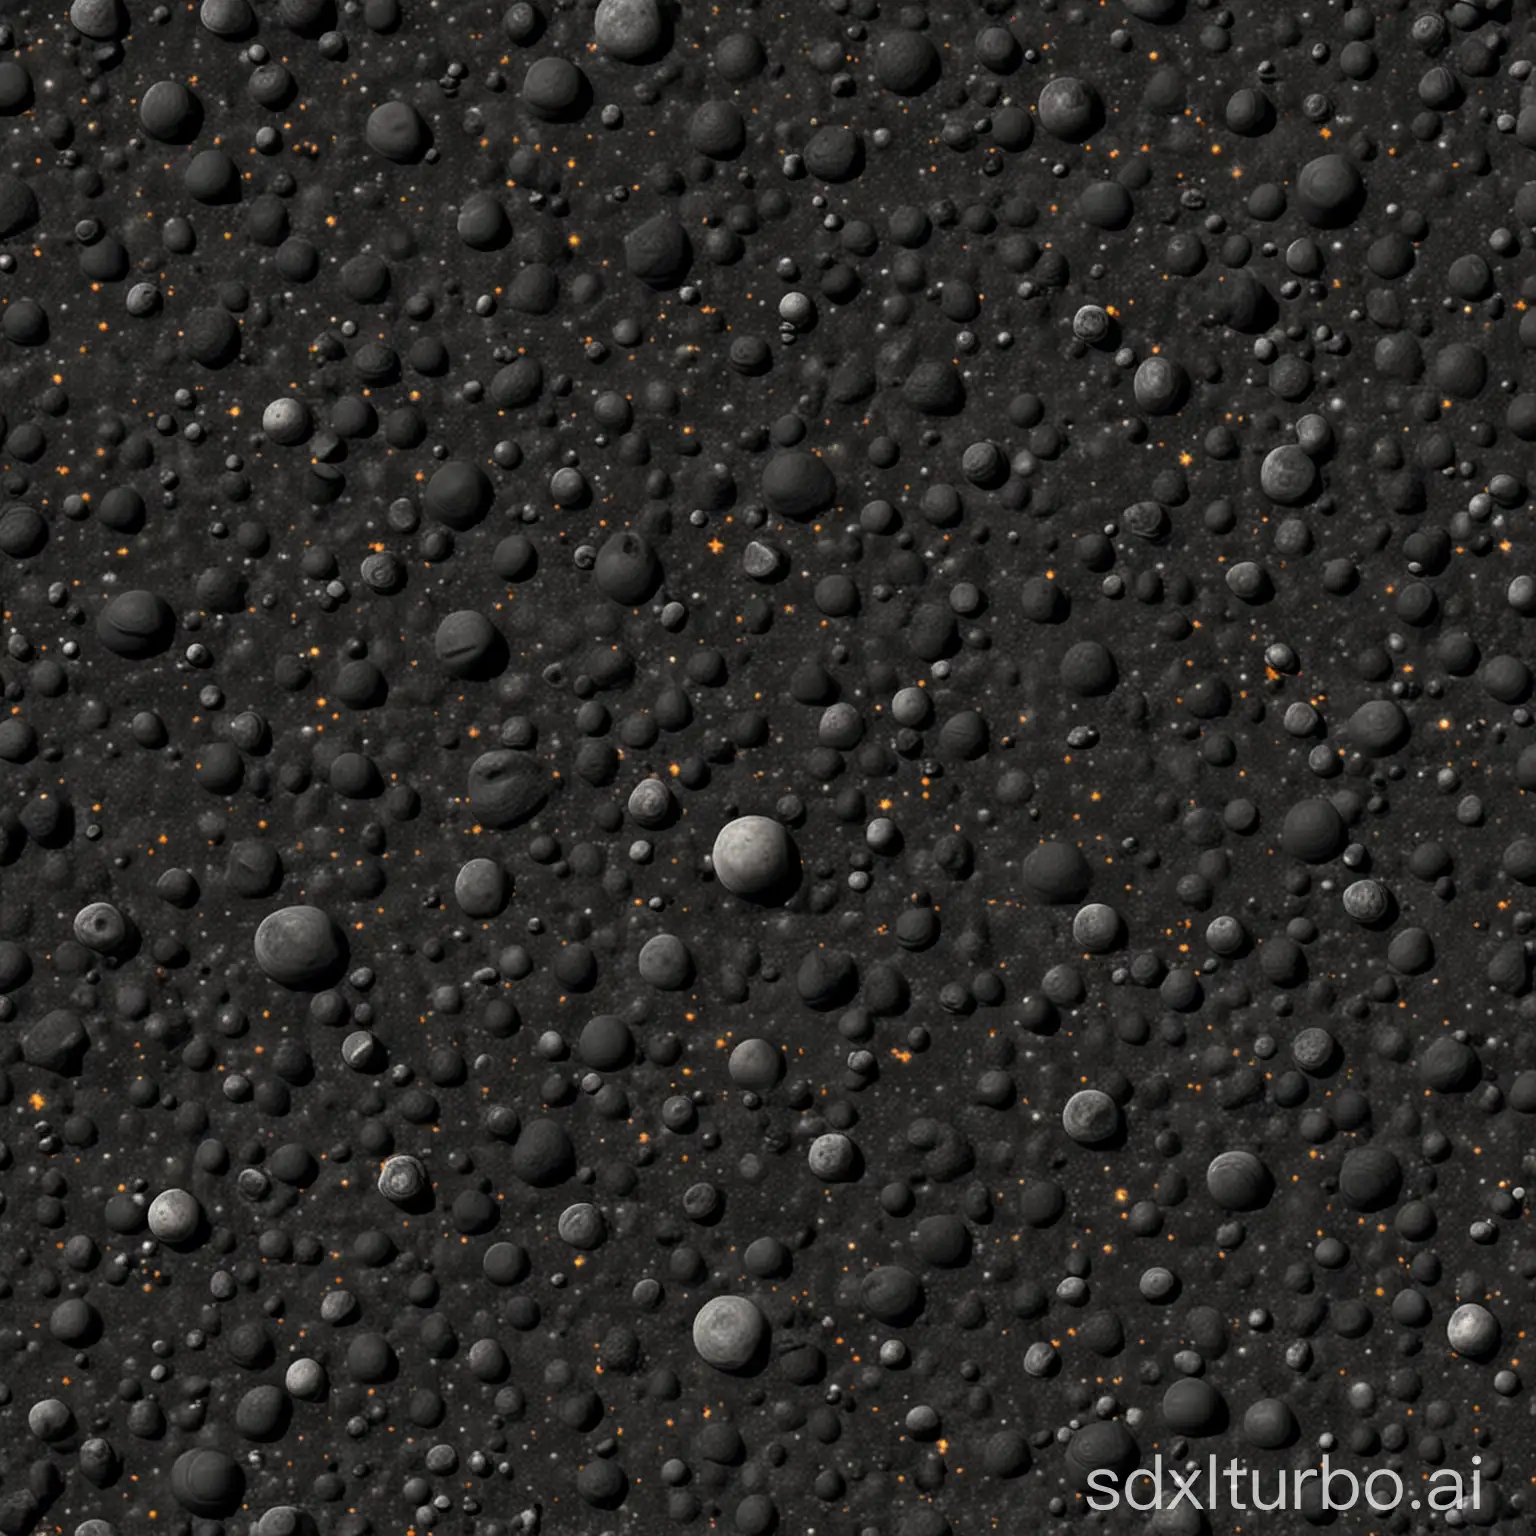 a asteroiden texture tileset, dark athmosphere